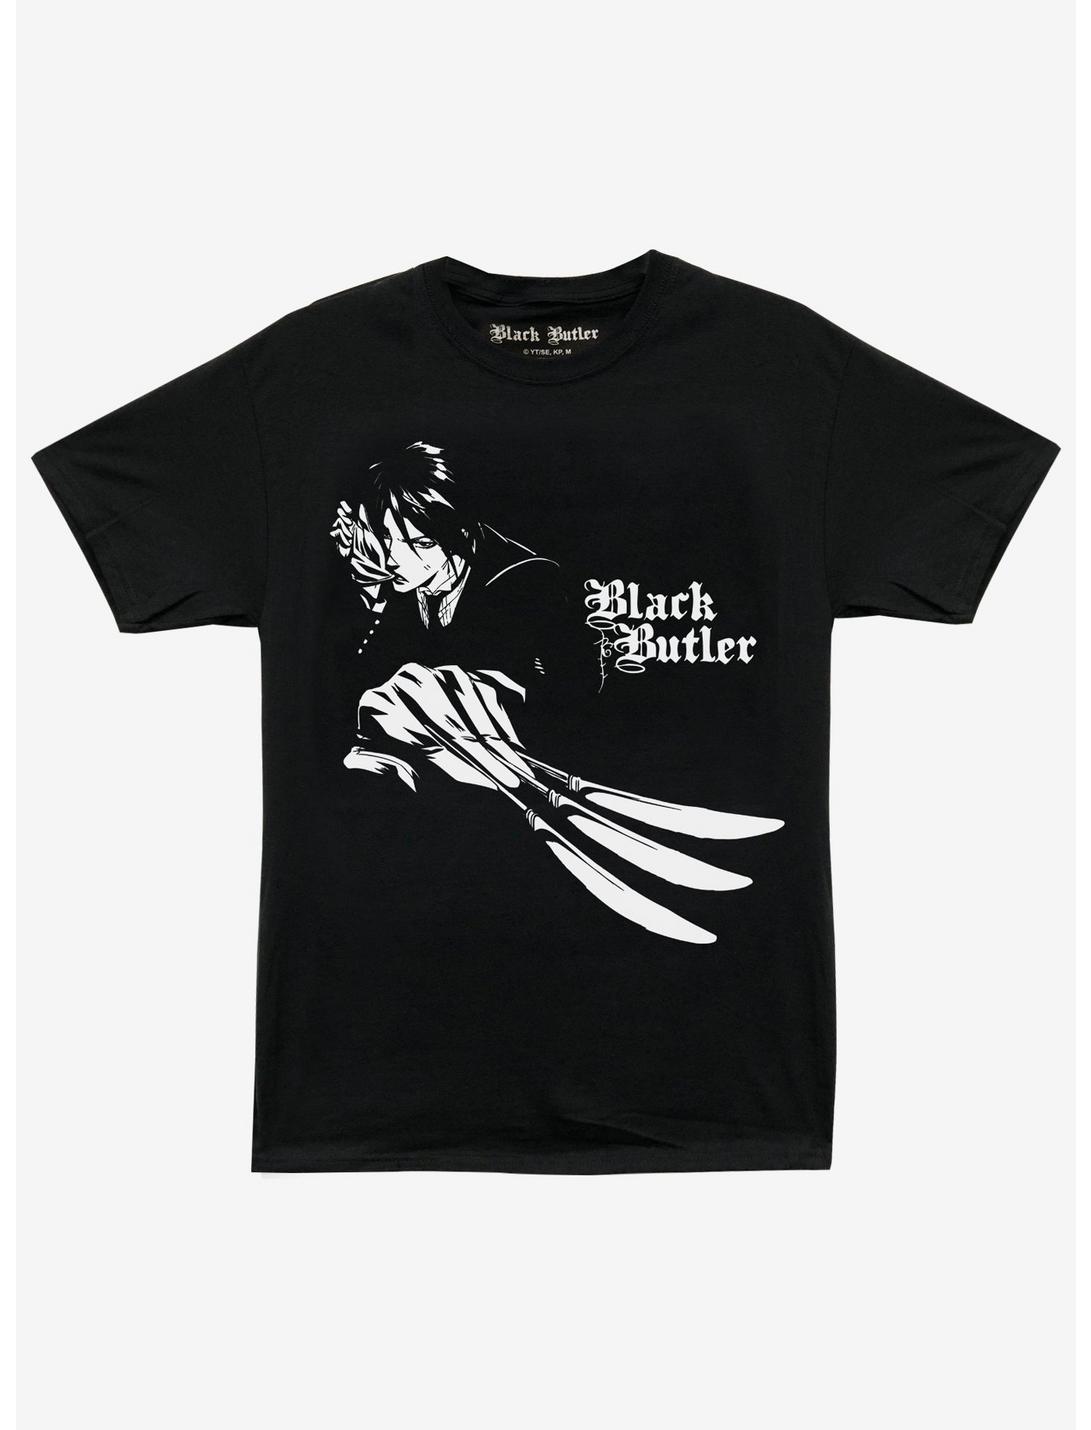 Black Butler Sebastian Knives Boyfriend Fit Girls T-Shirt, MULTI, hi-res